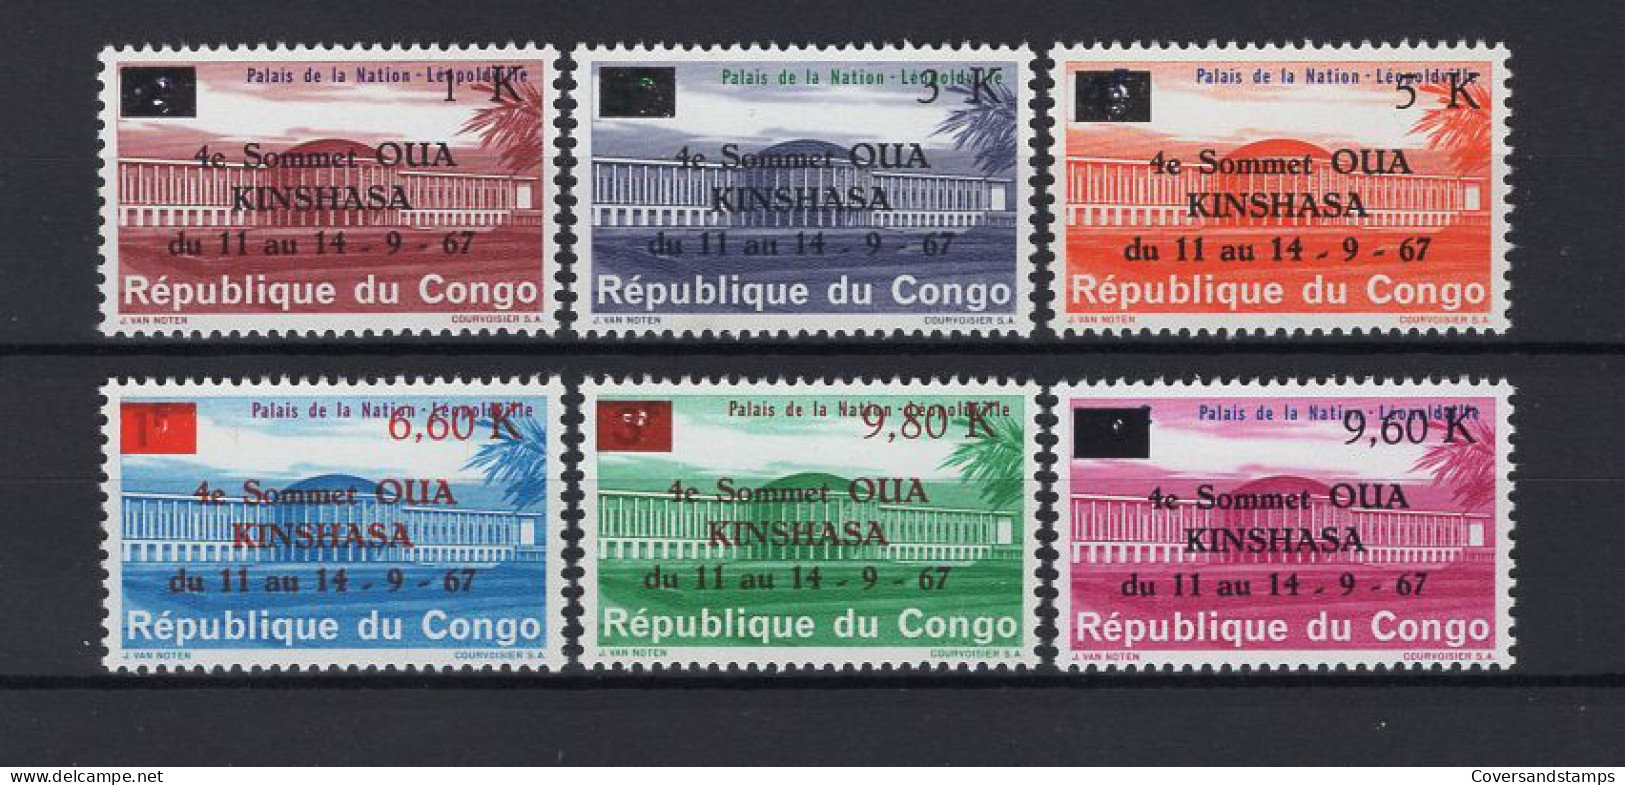 Republiek Congo 646/51 - MNH - Nuovi